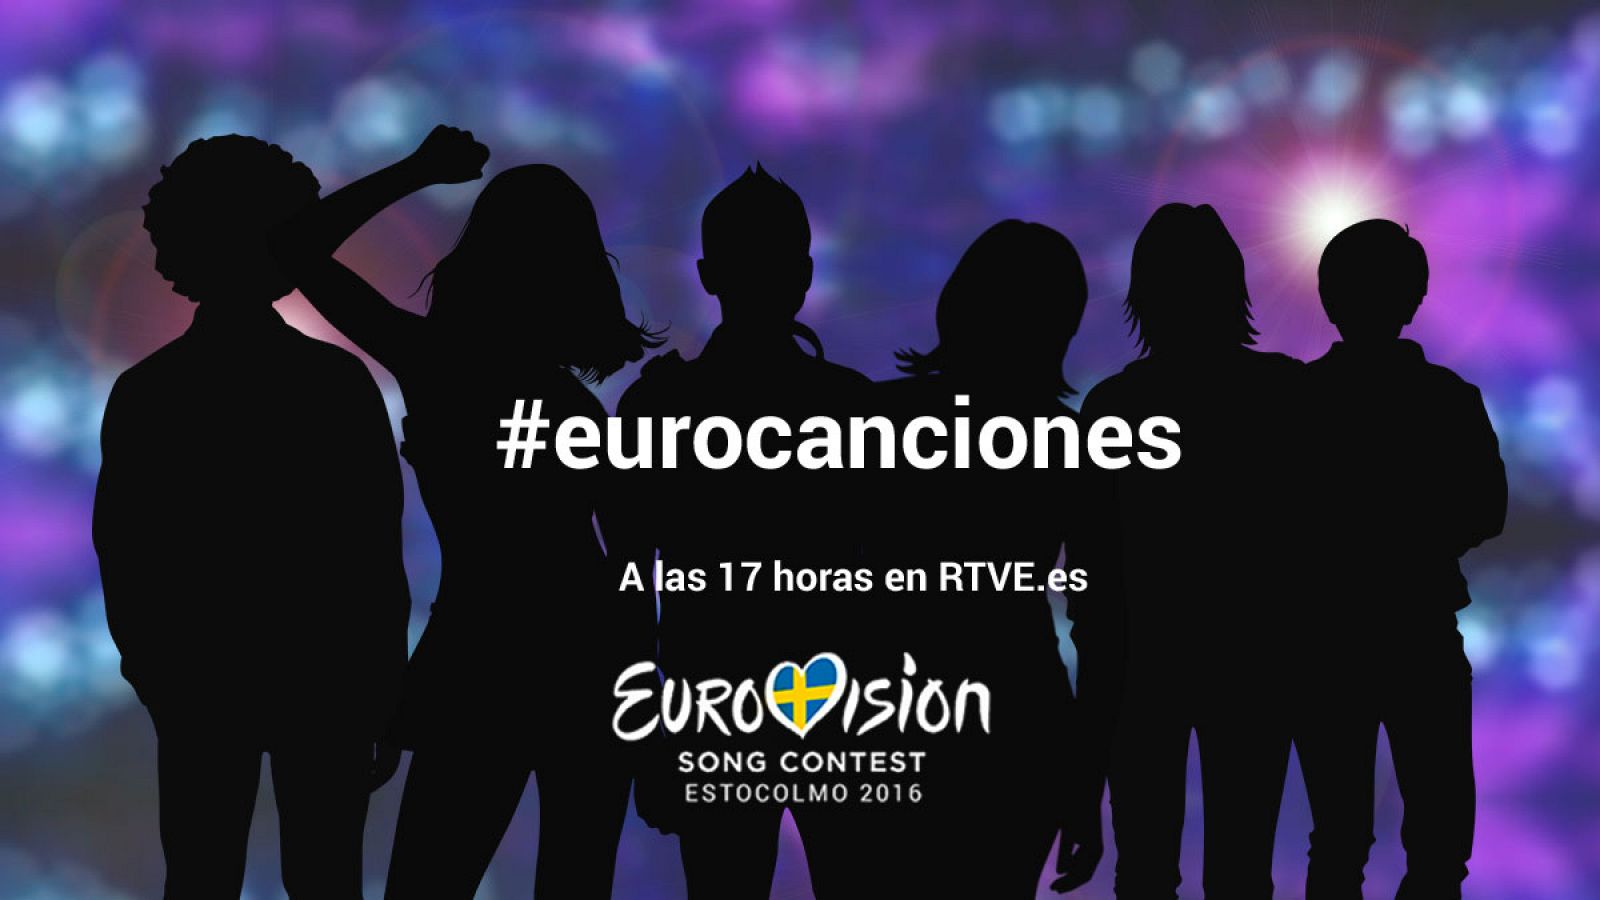 #eurocanciones, a las 17 horas en RTVE.es